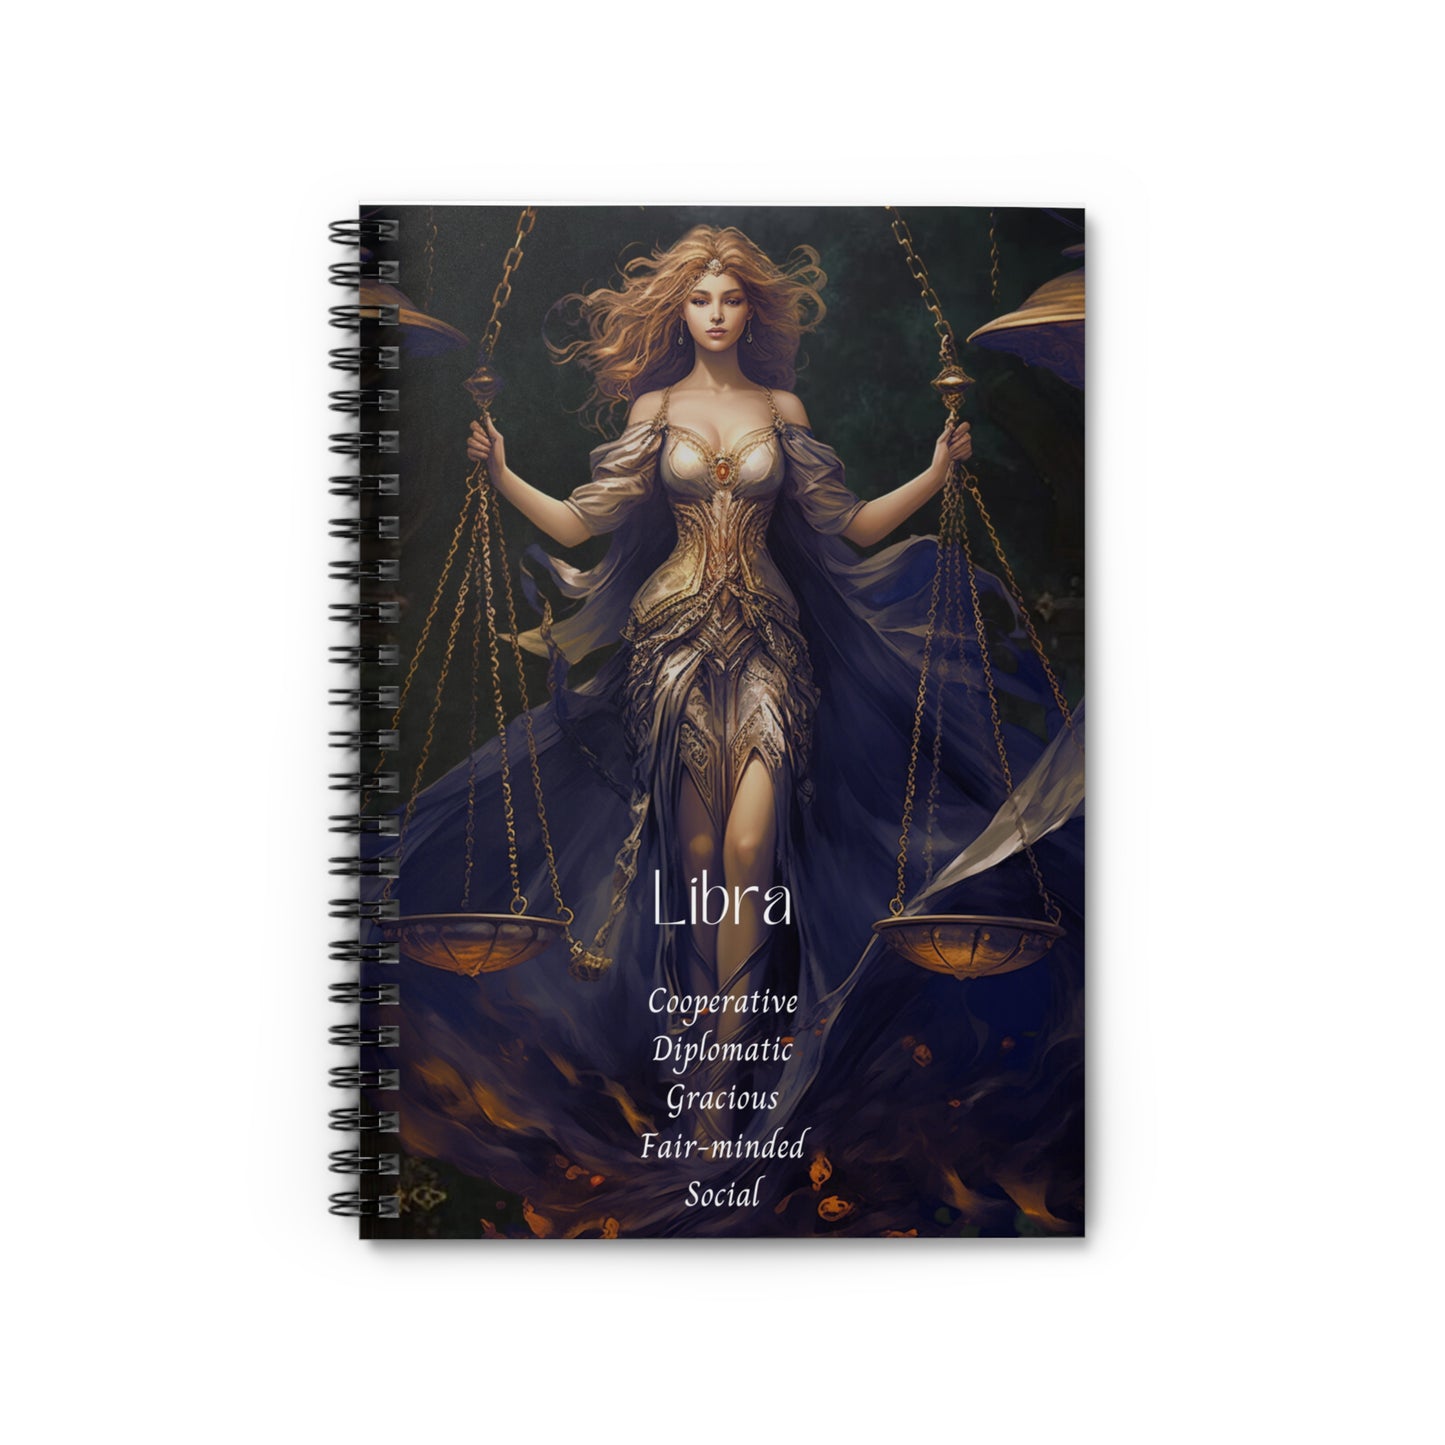 Libra Traits | Original Art | Spiral Notebook - Ruled Line